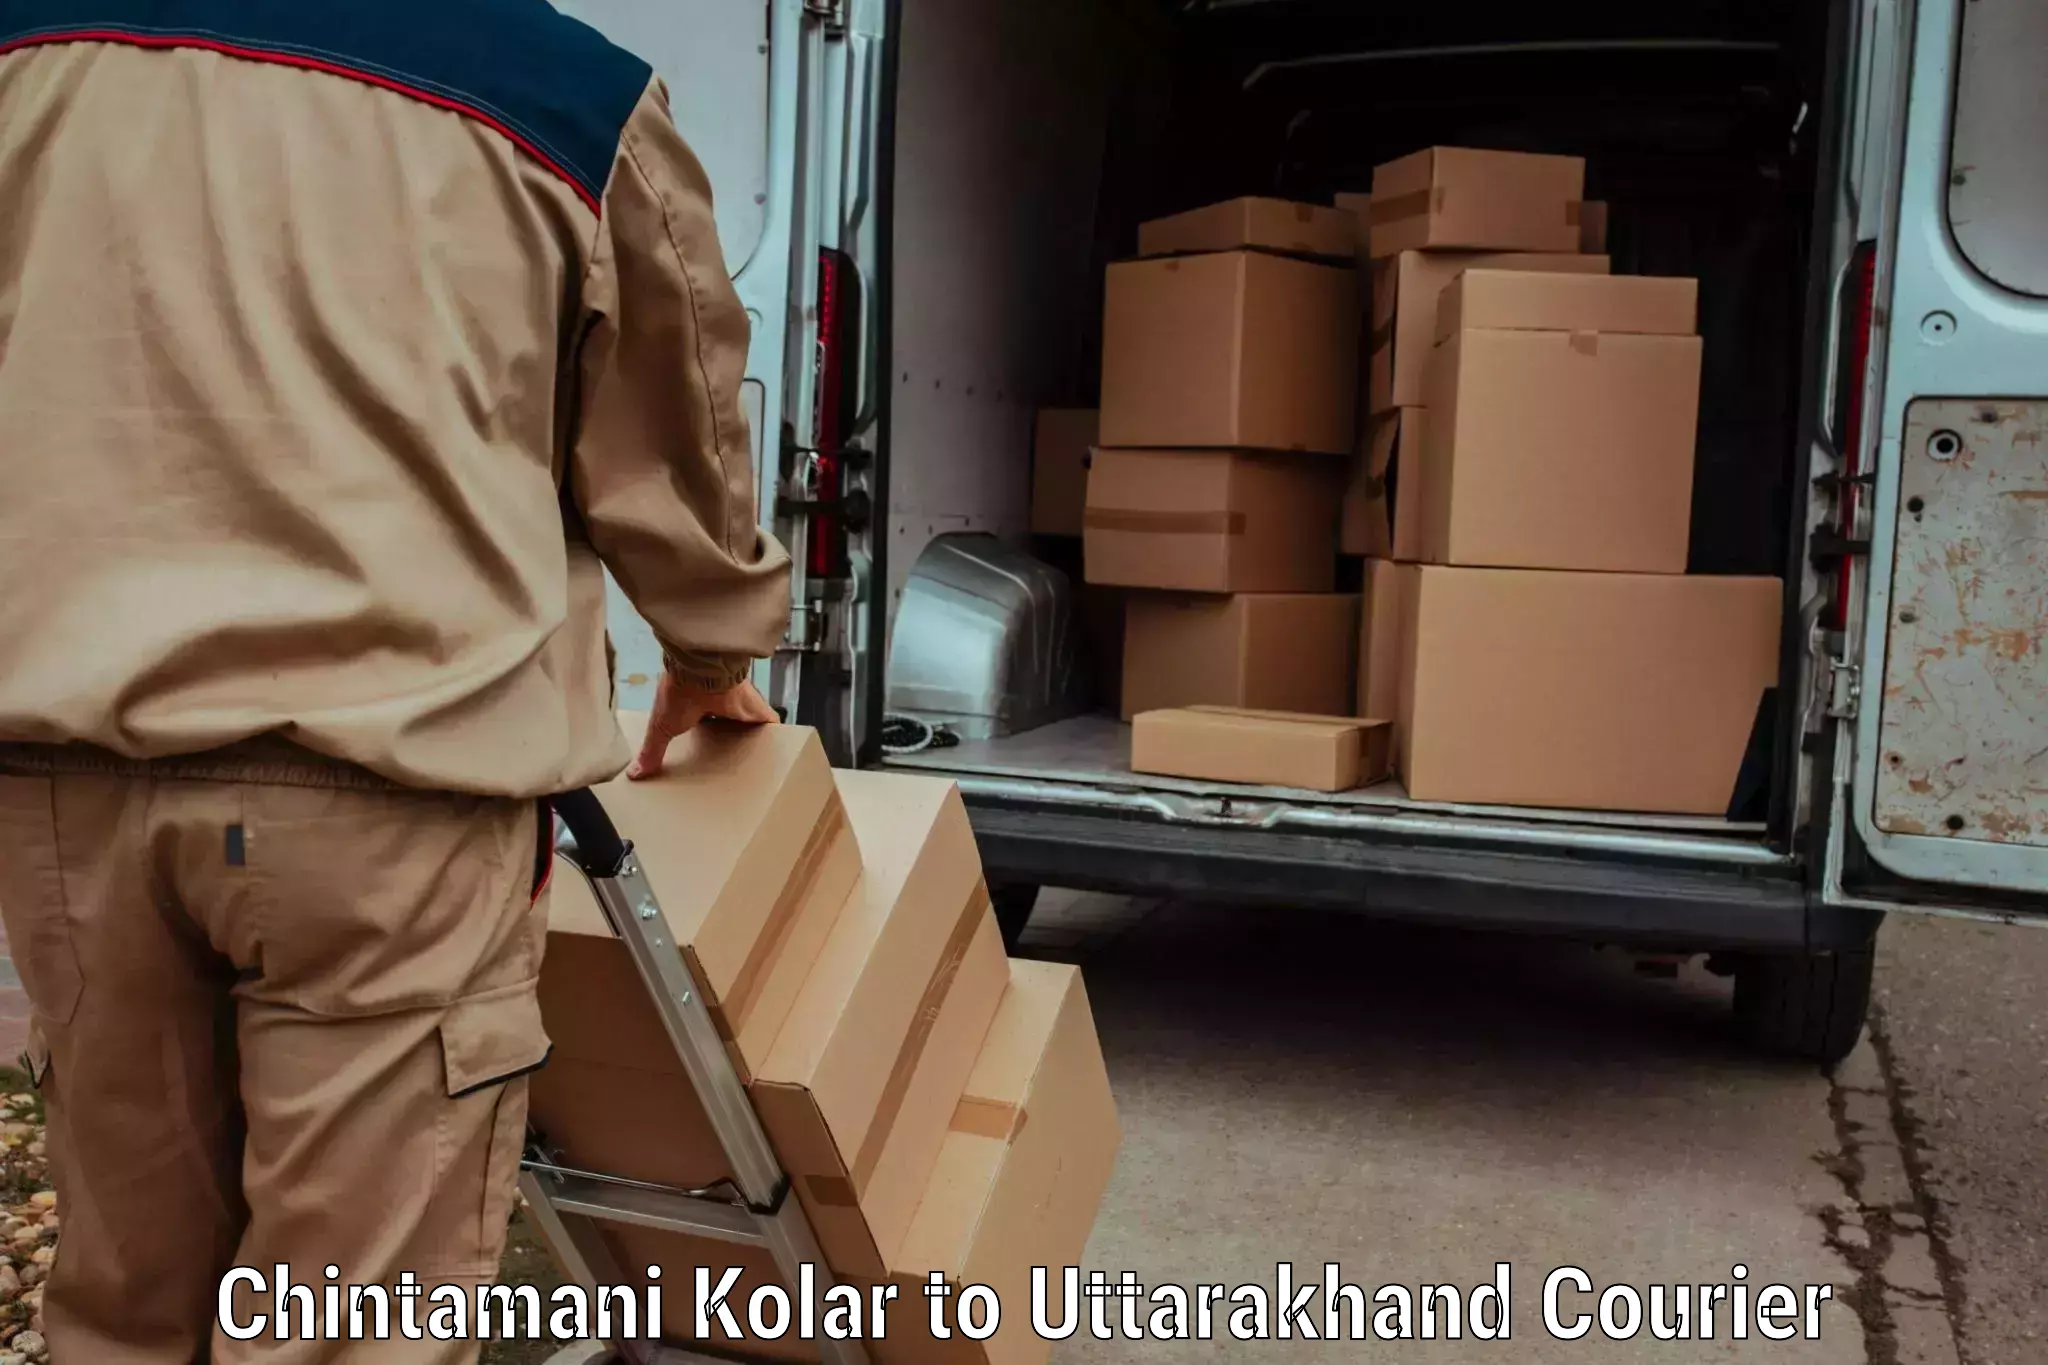 Luggage transport company Chintamani Kolar to Uttarakhand